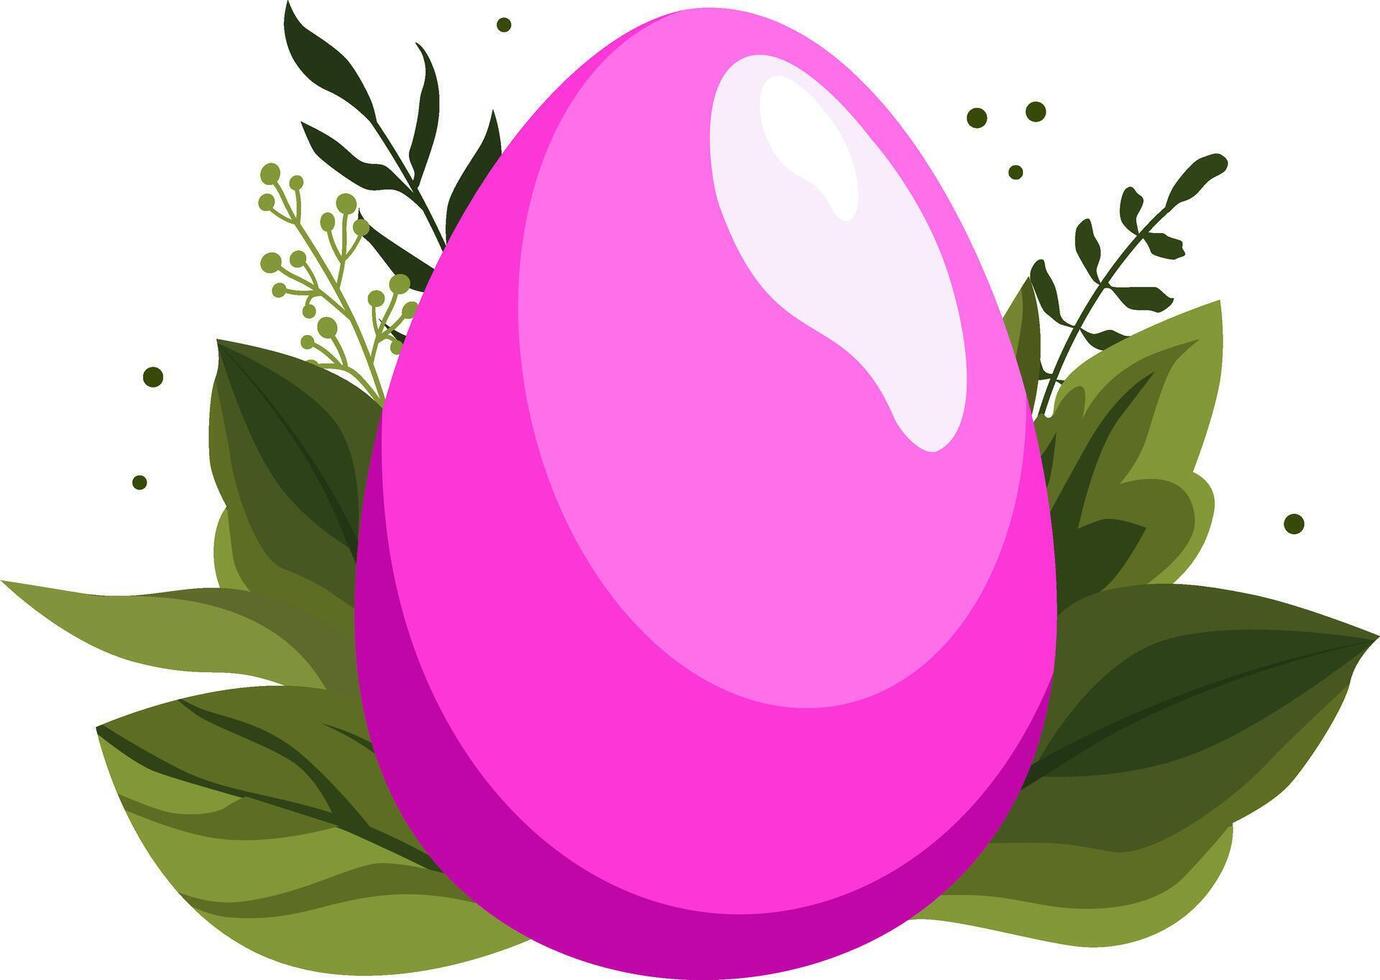 rosa påsk ägg med grön löv och grenar på bakgrund. illustration i platt stil. vektor ClipArt för design av kort, baner, flygblad, försäljning, affisch, ikoner